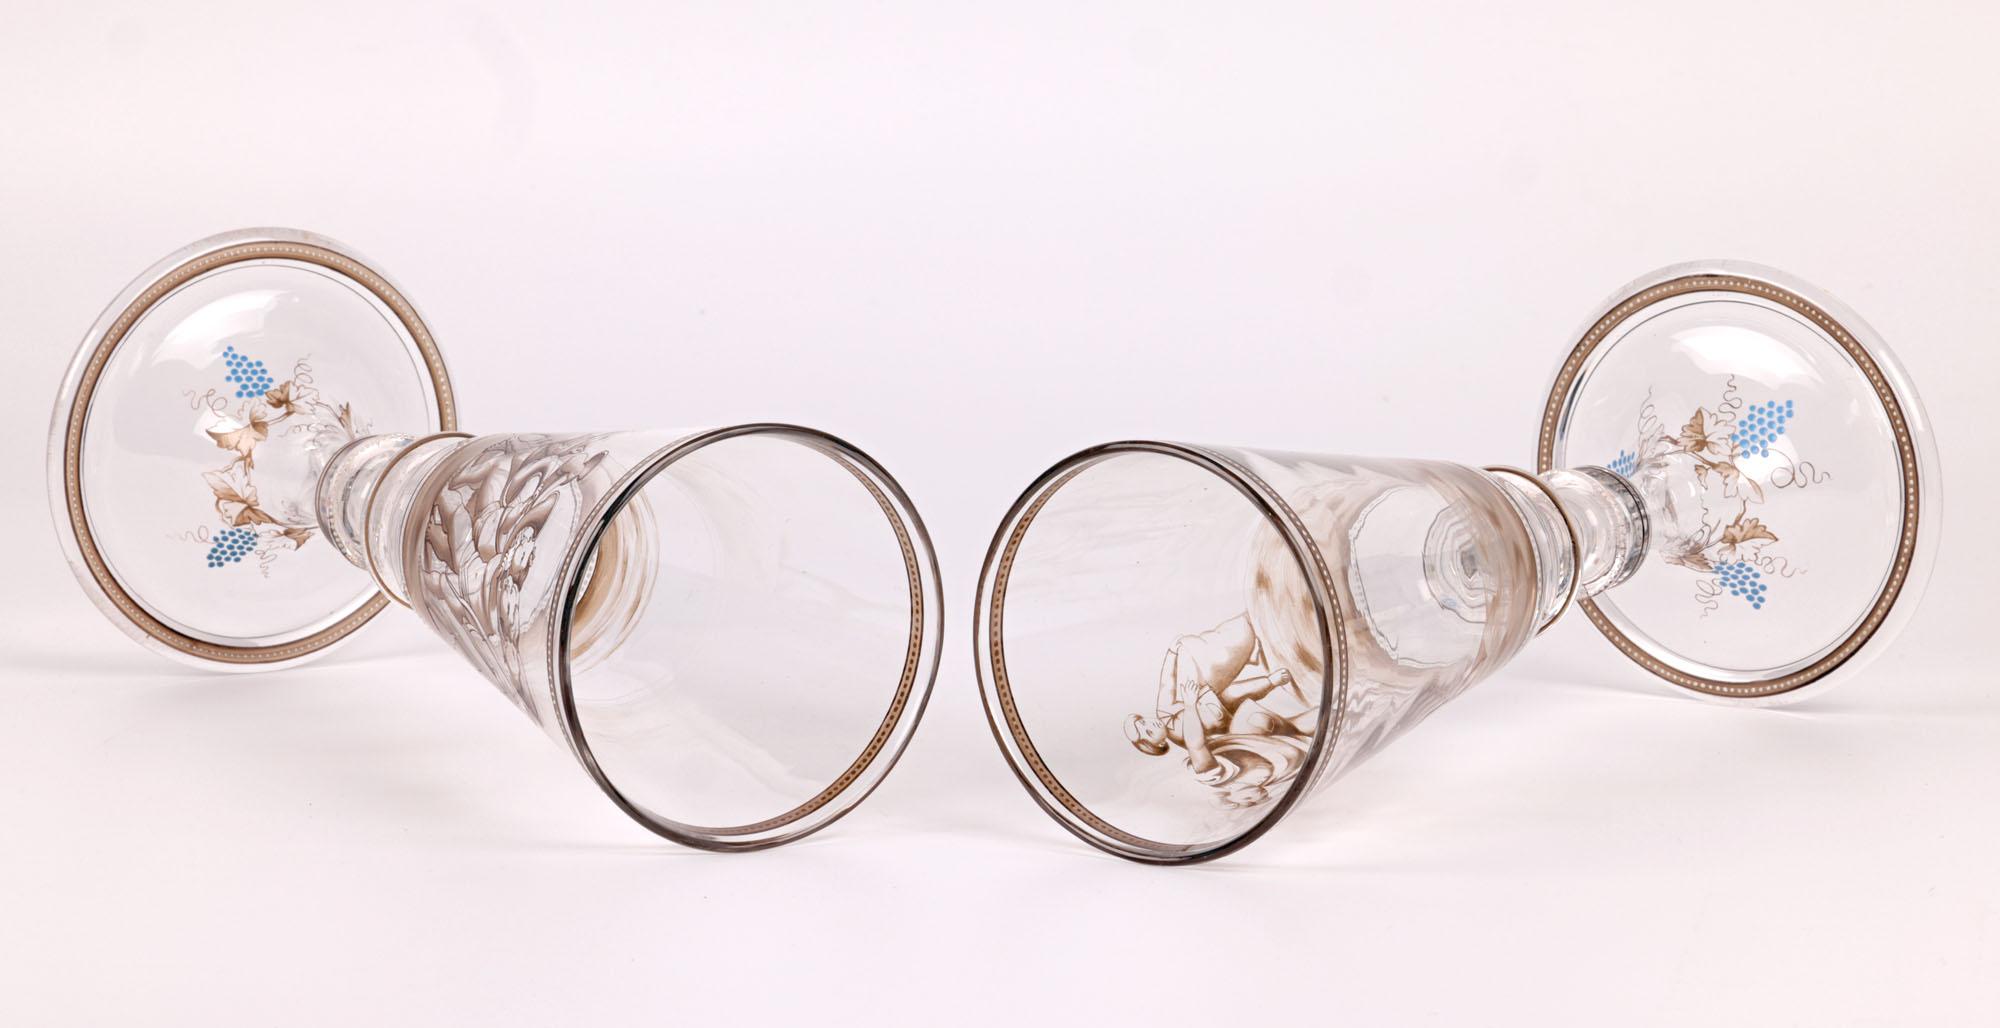 Wiener Werkstatte Attributed Pair Enamelled Glass Goblets In Good Condition For Sale In Bishop's Stortford, Hertfordshire